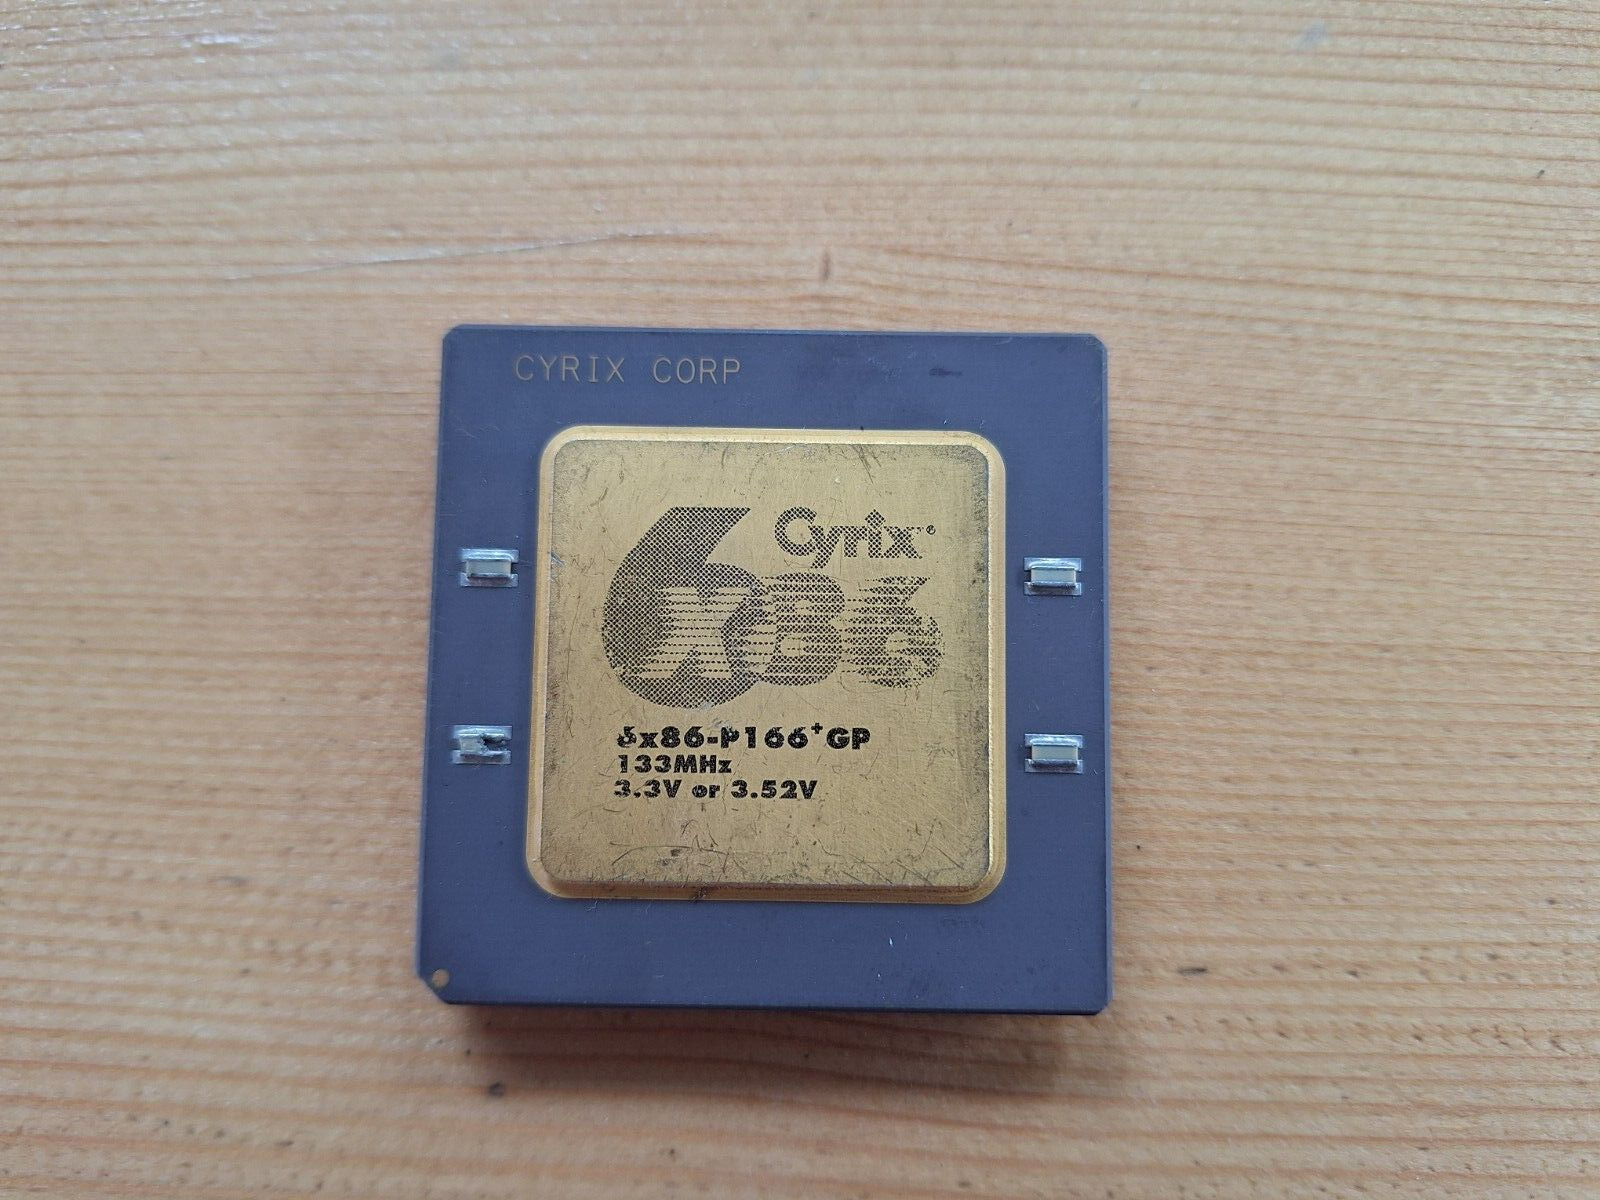 Cyrix 6x86-P166+ GP 133MHz caps version 3.3 or 3.52V 6x86 vintage CPU GOLD #3